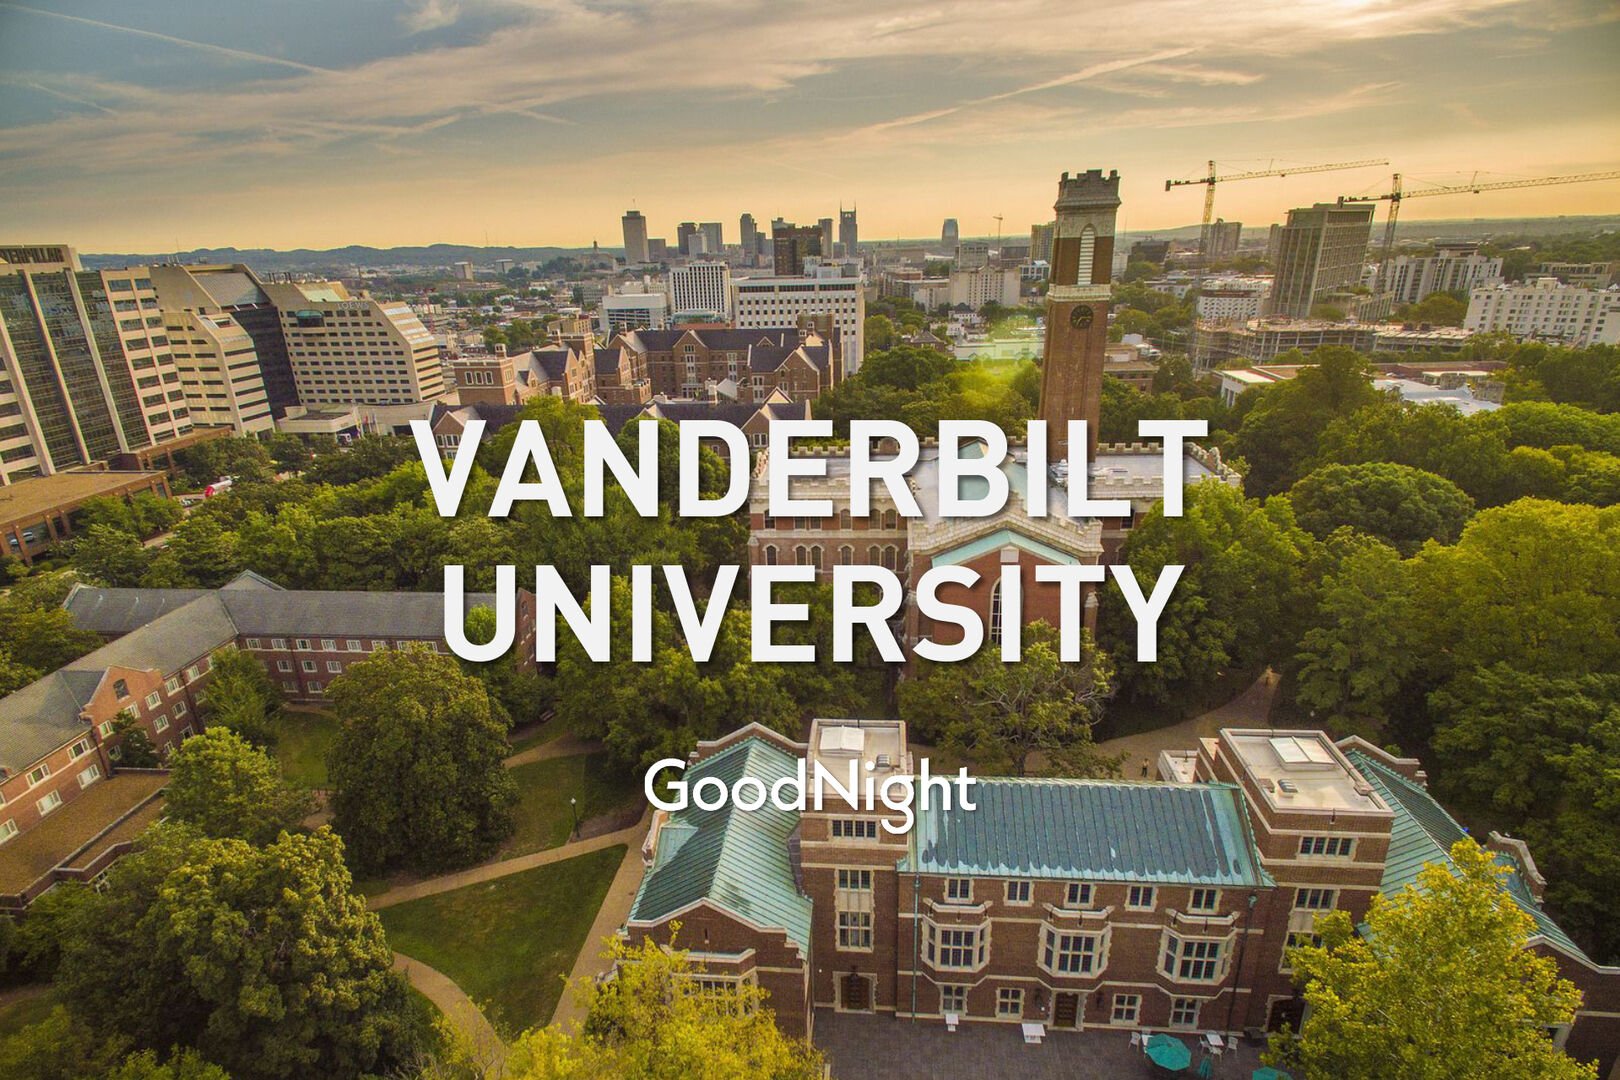 9 mins: Vanderbilt University